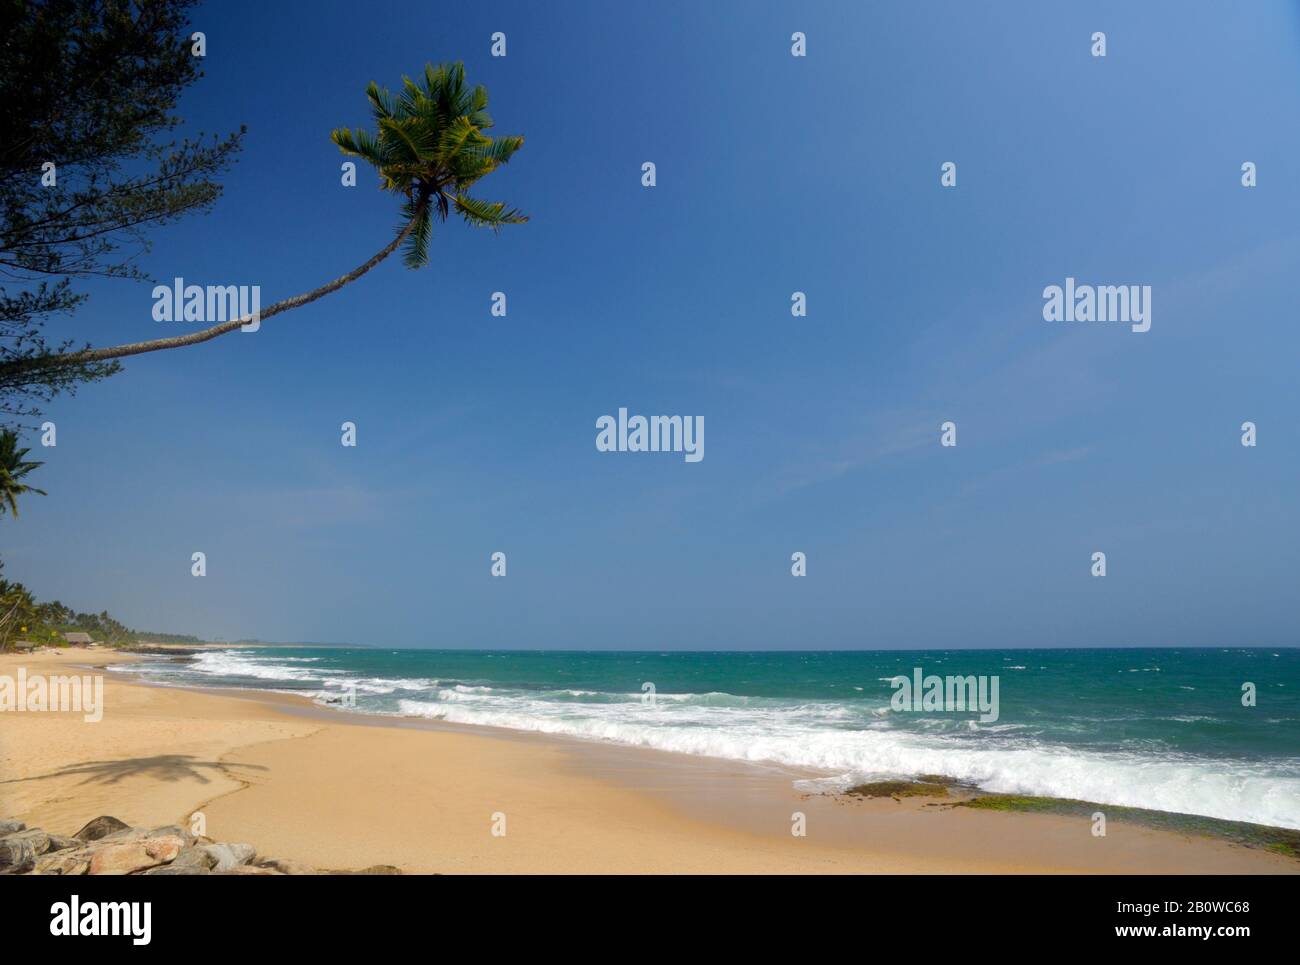 Sri Lanka, Tangalle beach Stock Photo